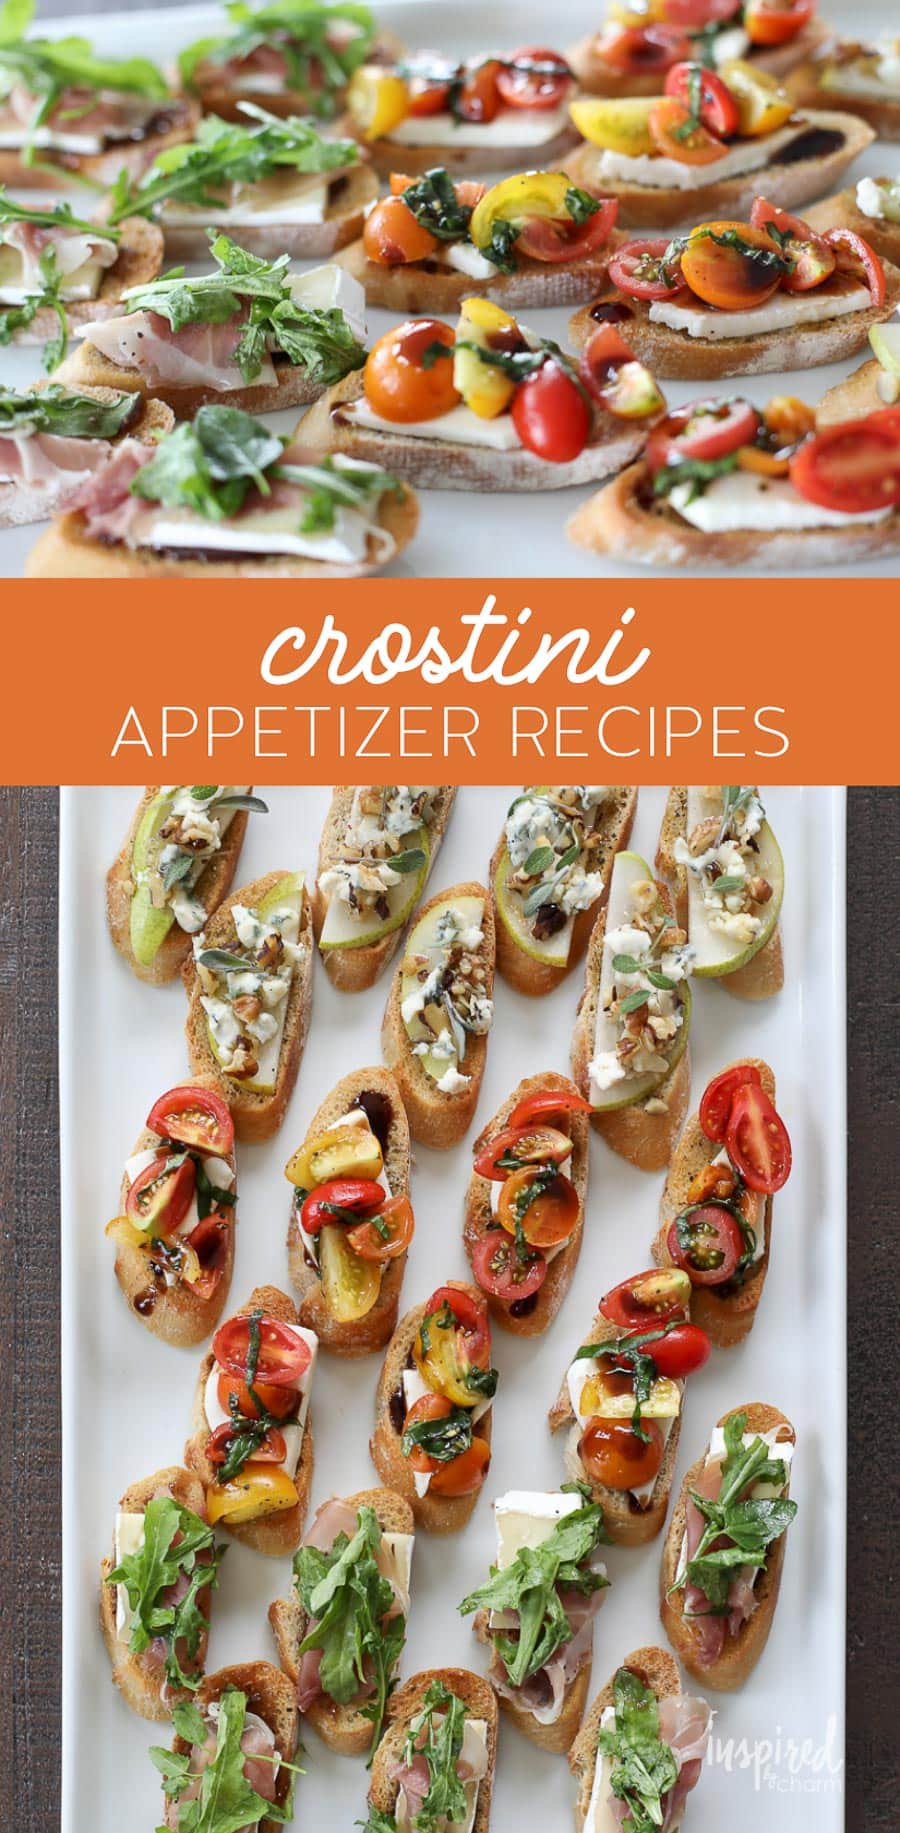 Crostini Appetizer Recipes #crostini #bread #appetizer #recipe #cheese #bruschetta